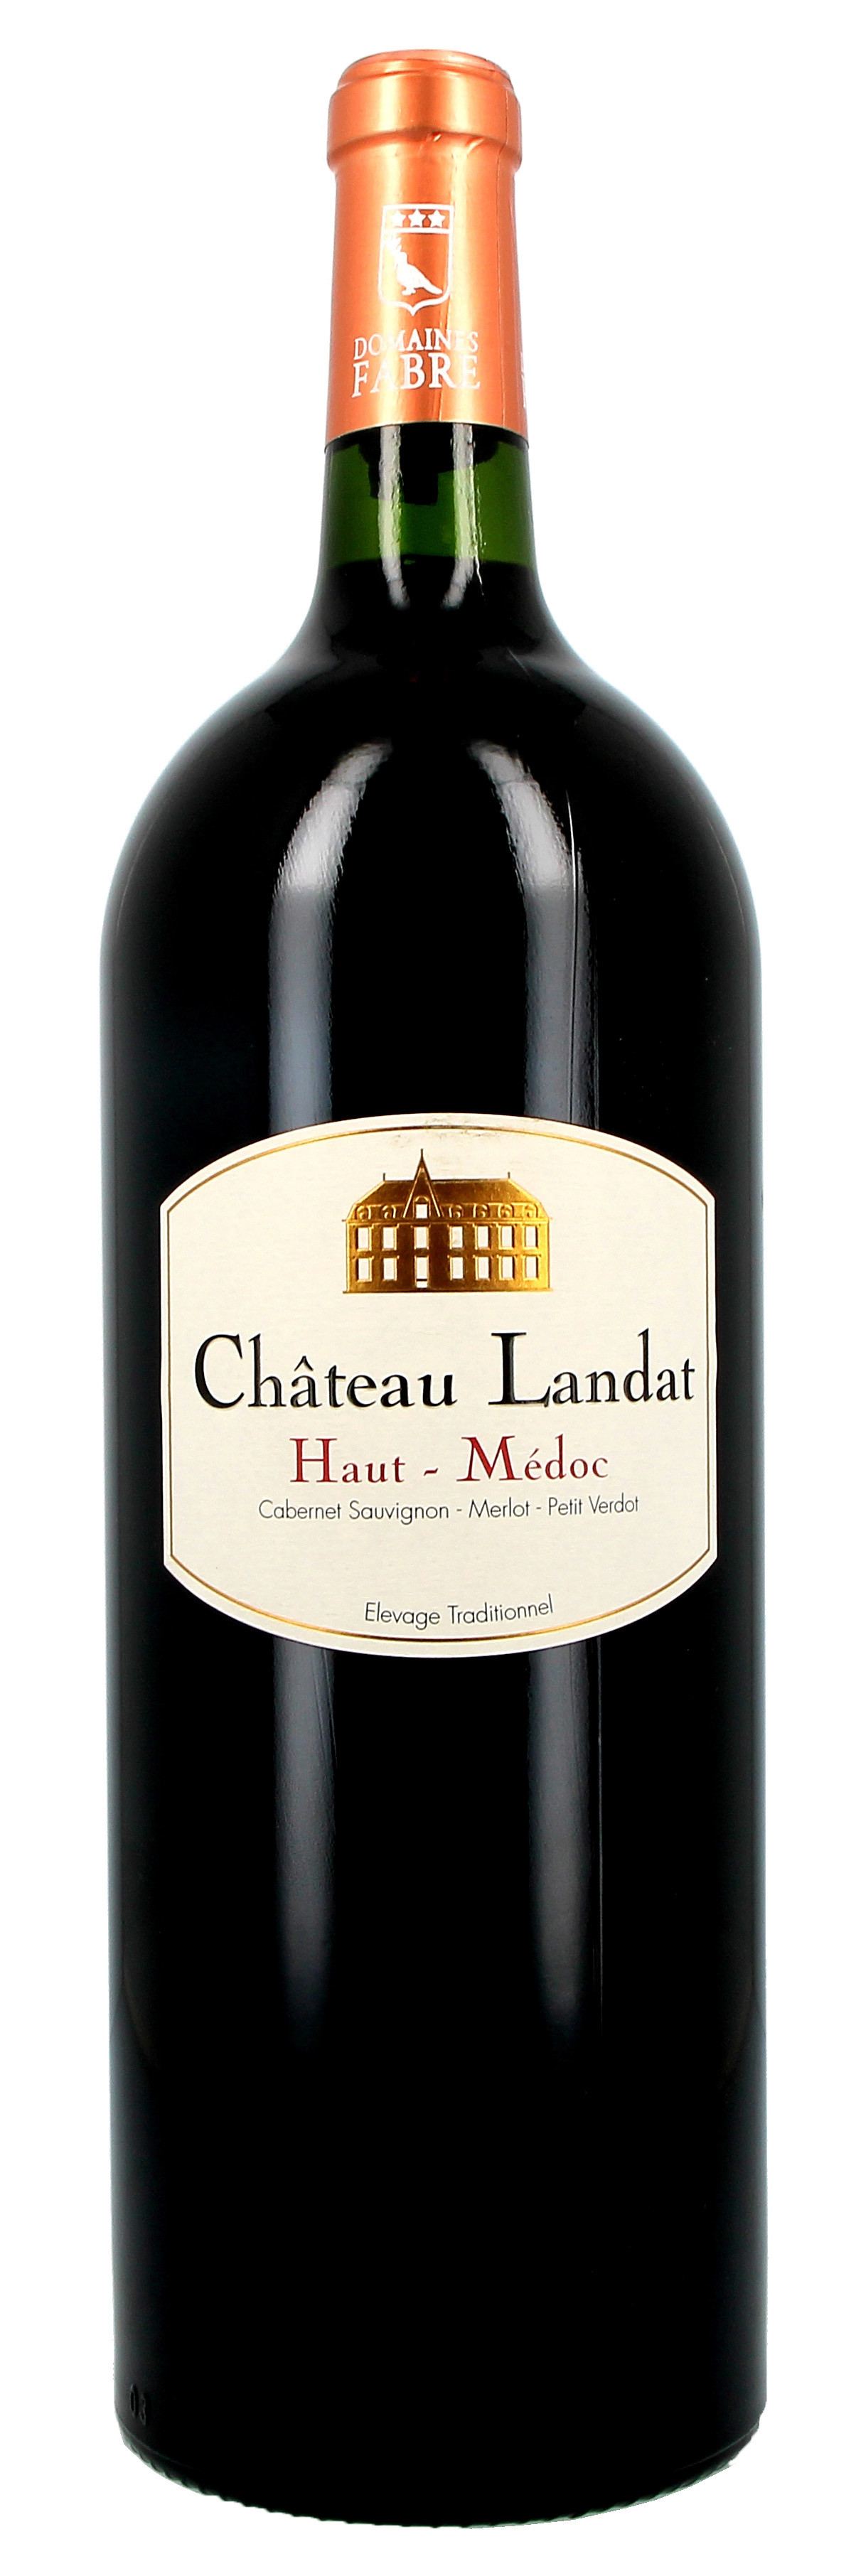 Chateau Landat 1.5L magnum 2015 Haut-Medoc Cru Bourgeois (Wijnen)